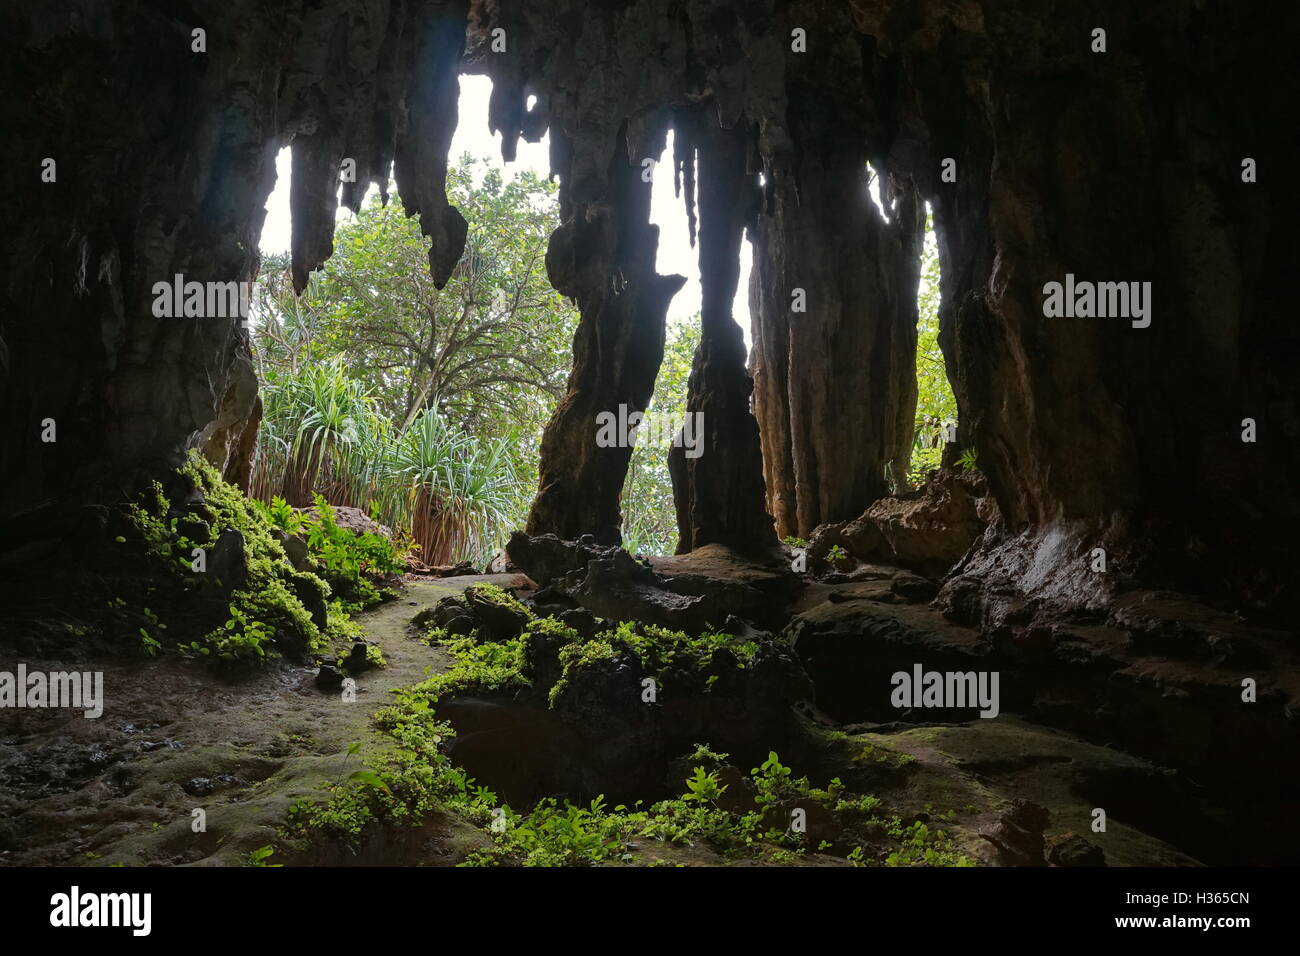 Uscire dalla caverna con stalattiti e stalagmiti, visto dall'interno, Rurutu austal isola, a sud Pacifico, Polinesia Francese Foto Stock